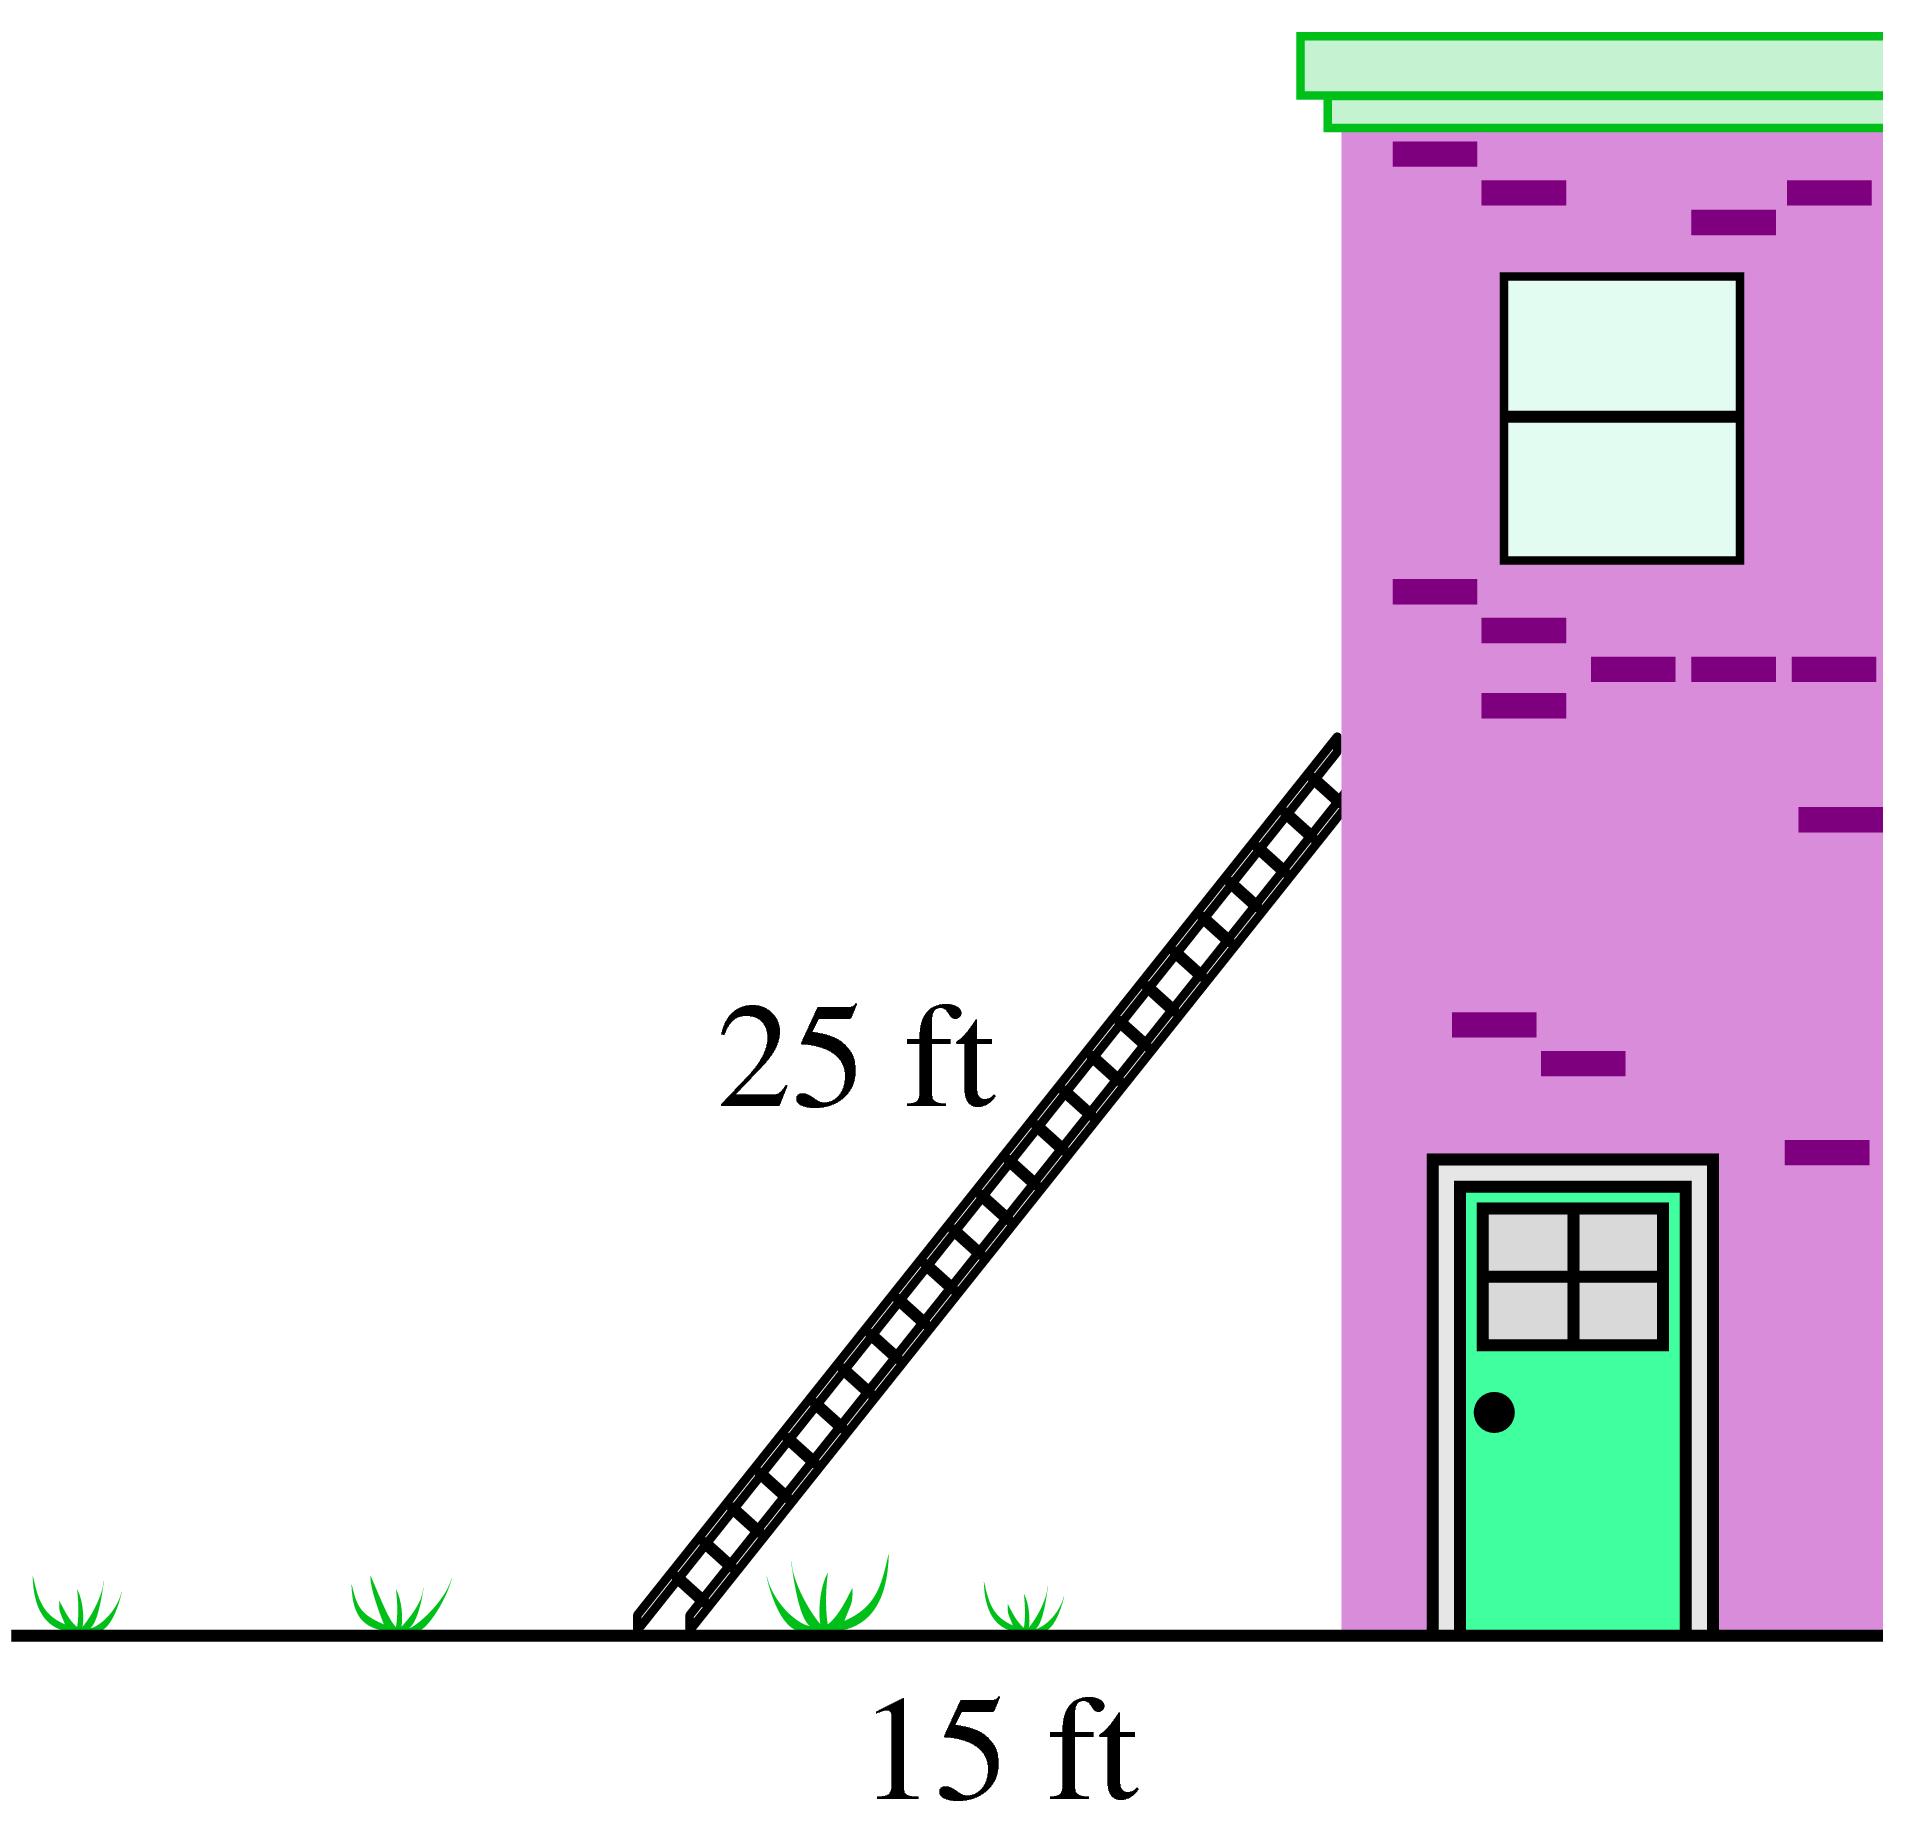 ladder against building